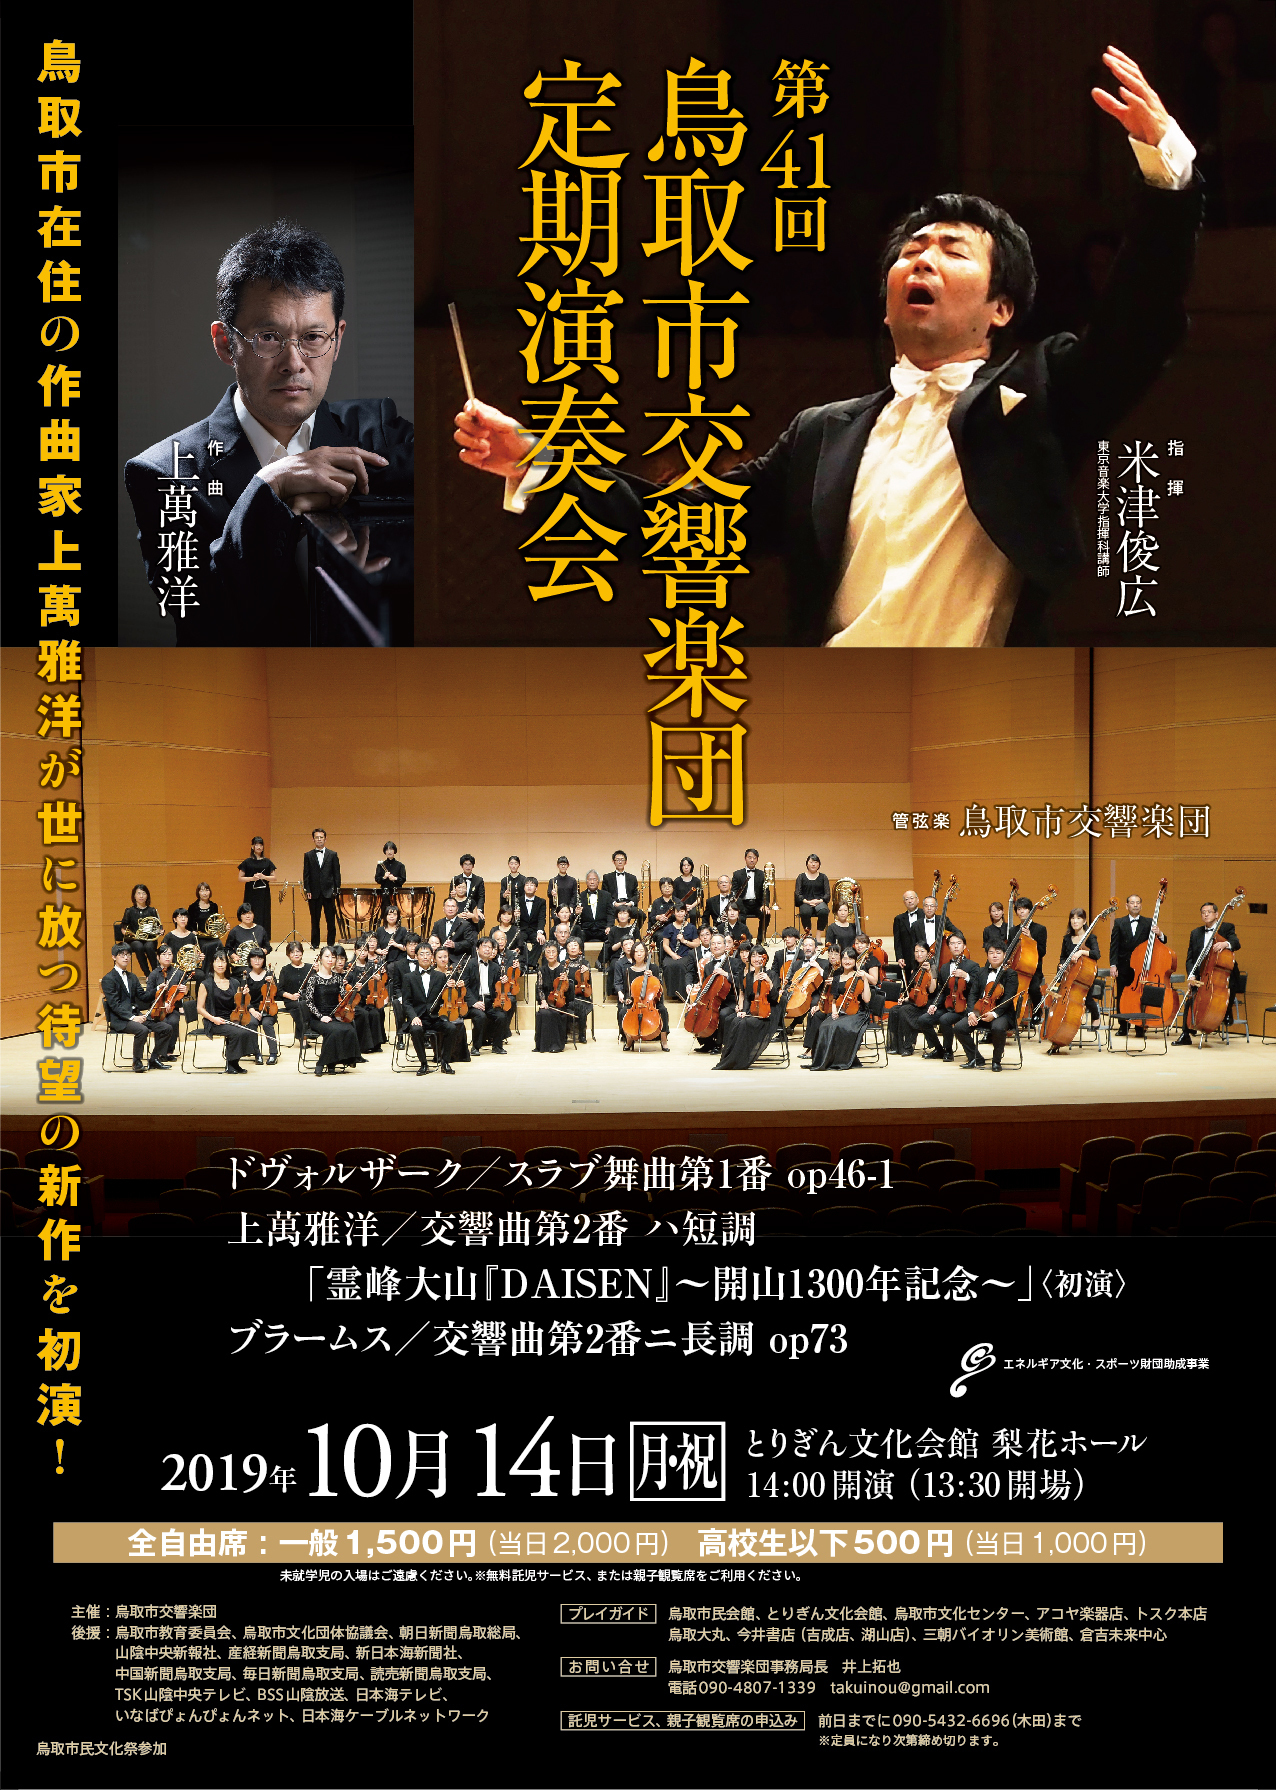 第41回鳥取市交響楽団定期演奏会 鳥取市交響楽団公式サイト ブログ版